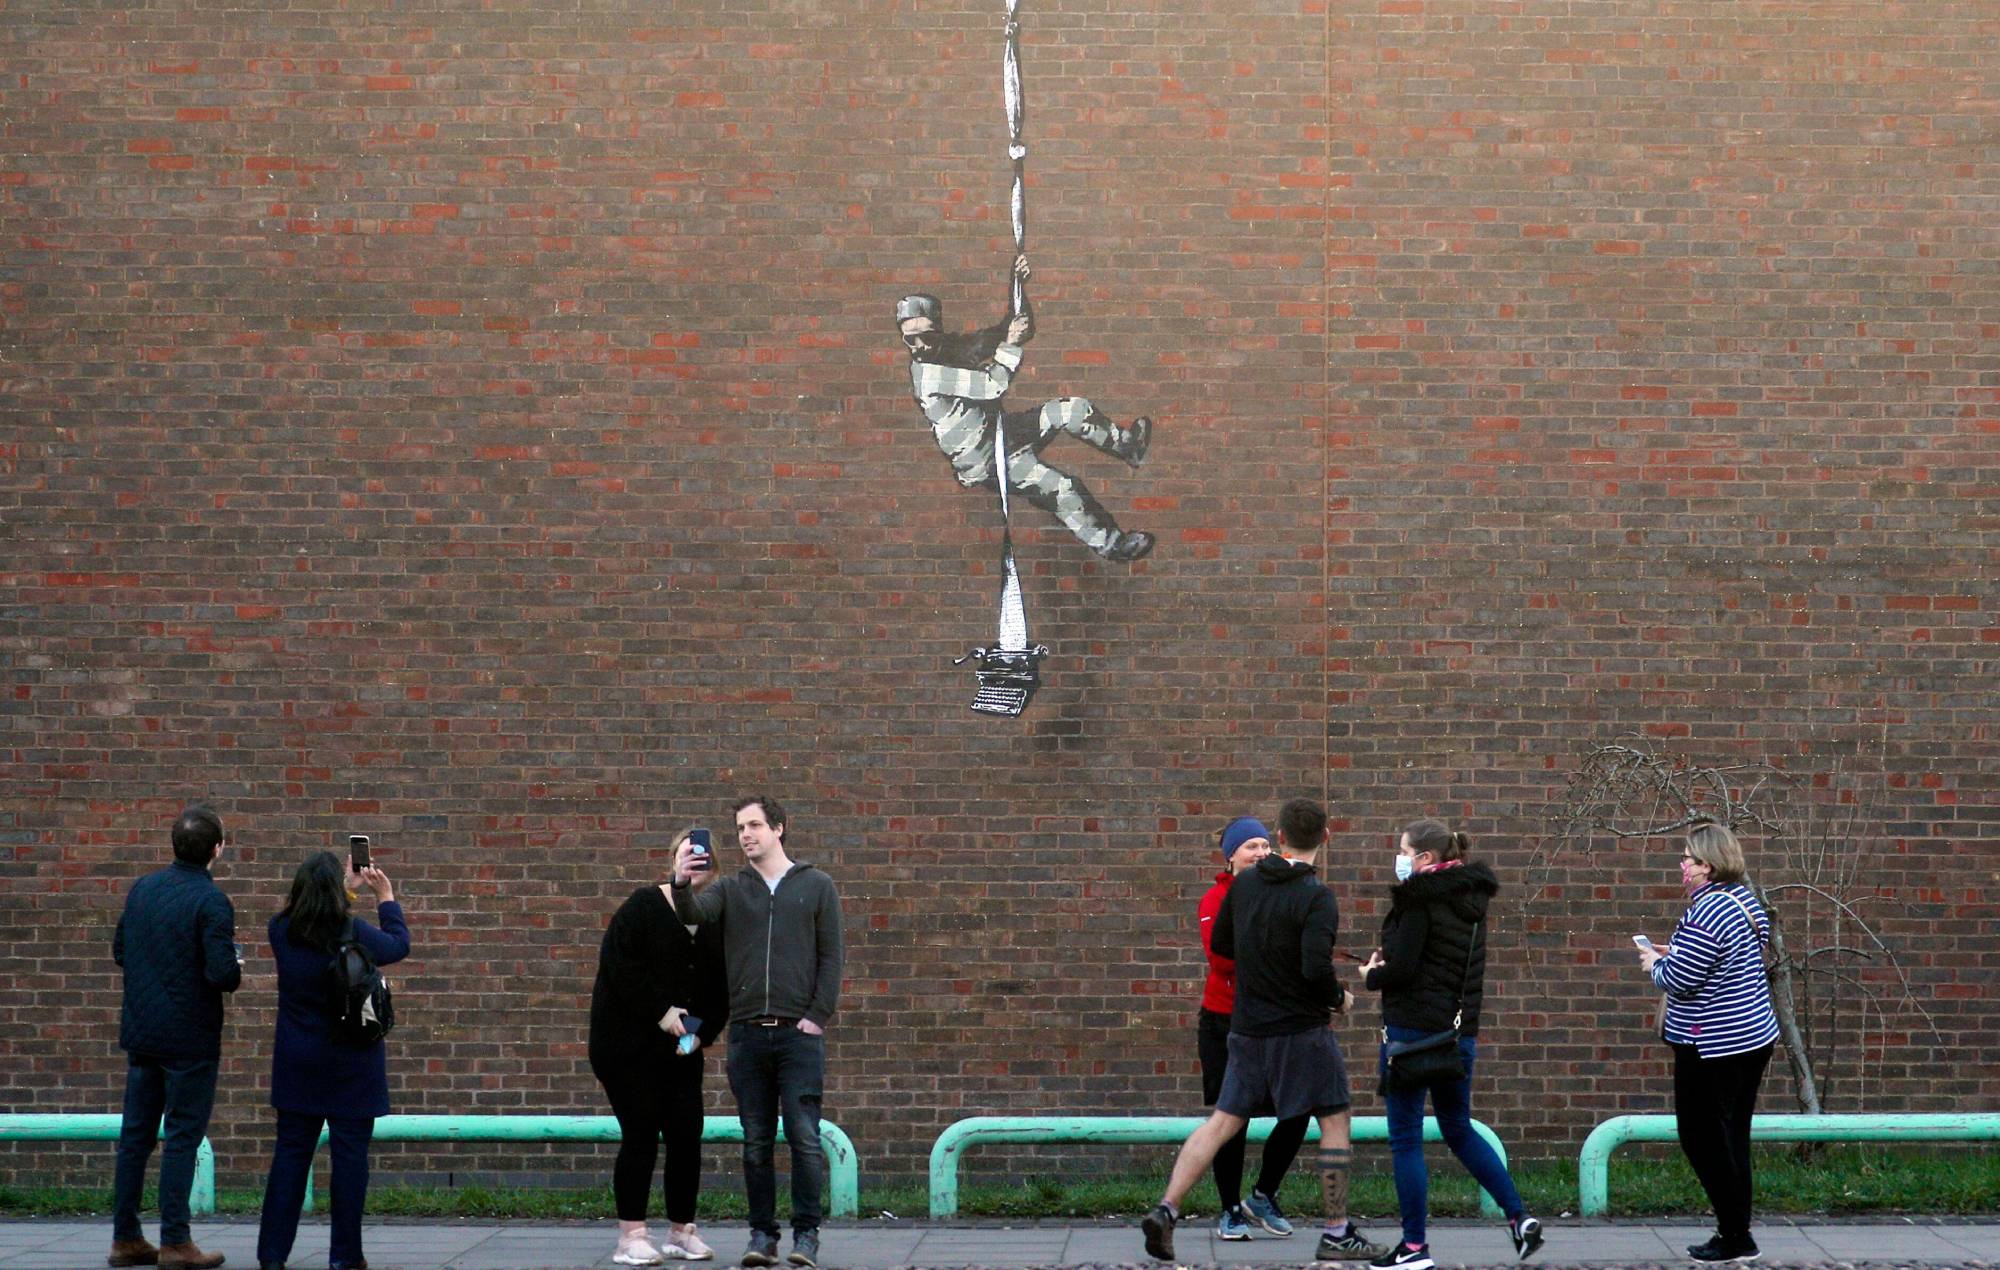 Aparece una supuesta obra de Banksy en una cárcel del Reino Unido